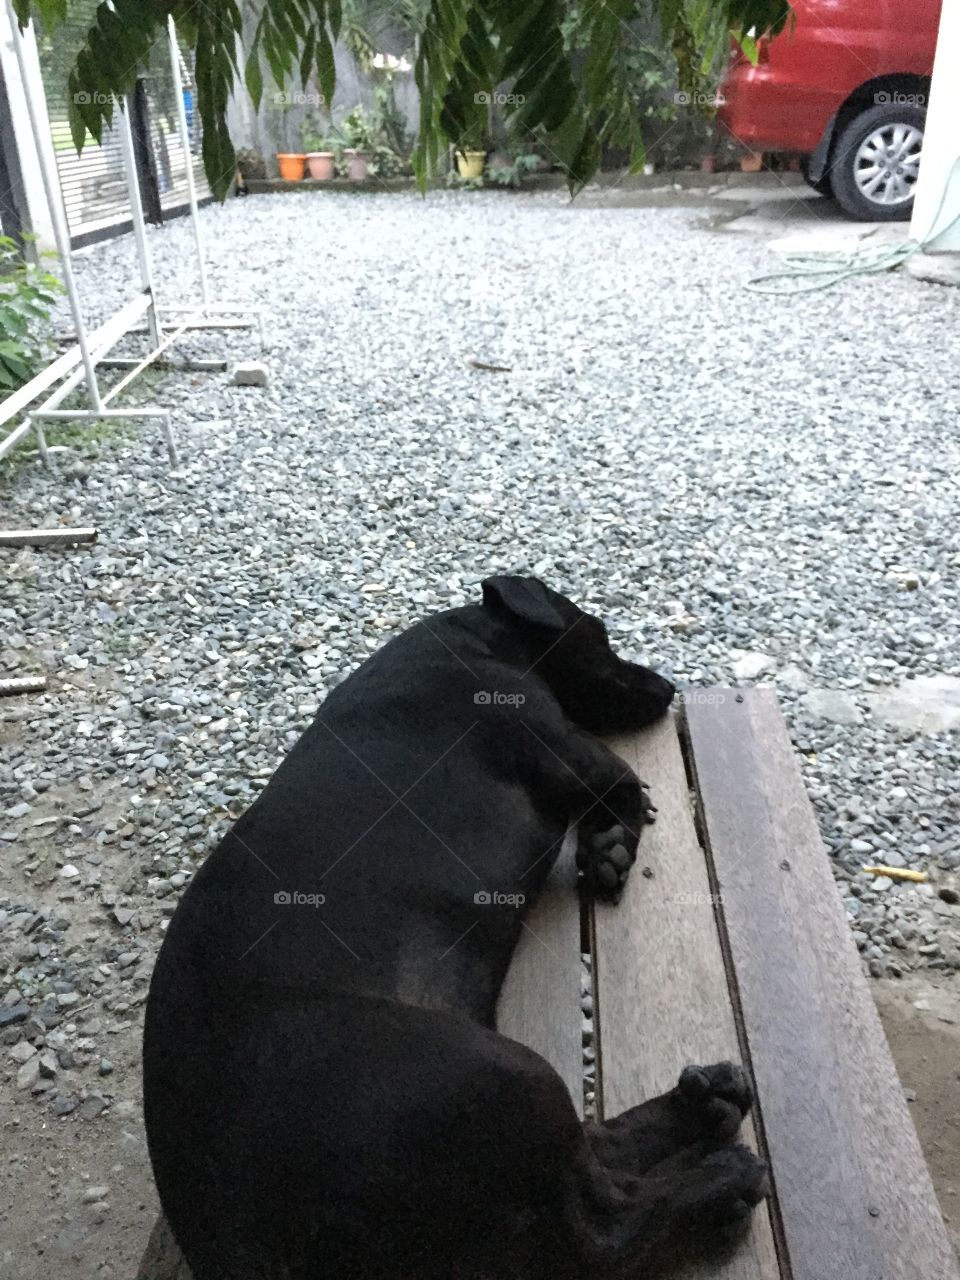 Dachshund dog sleeping